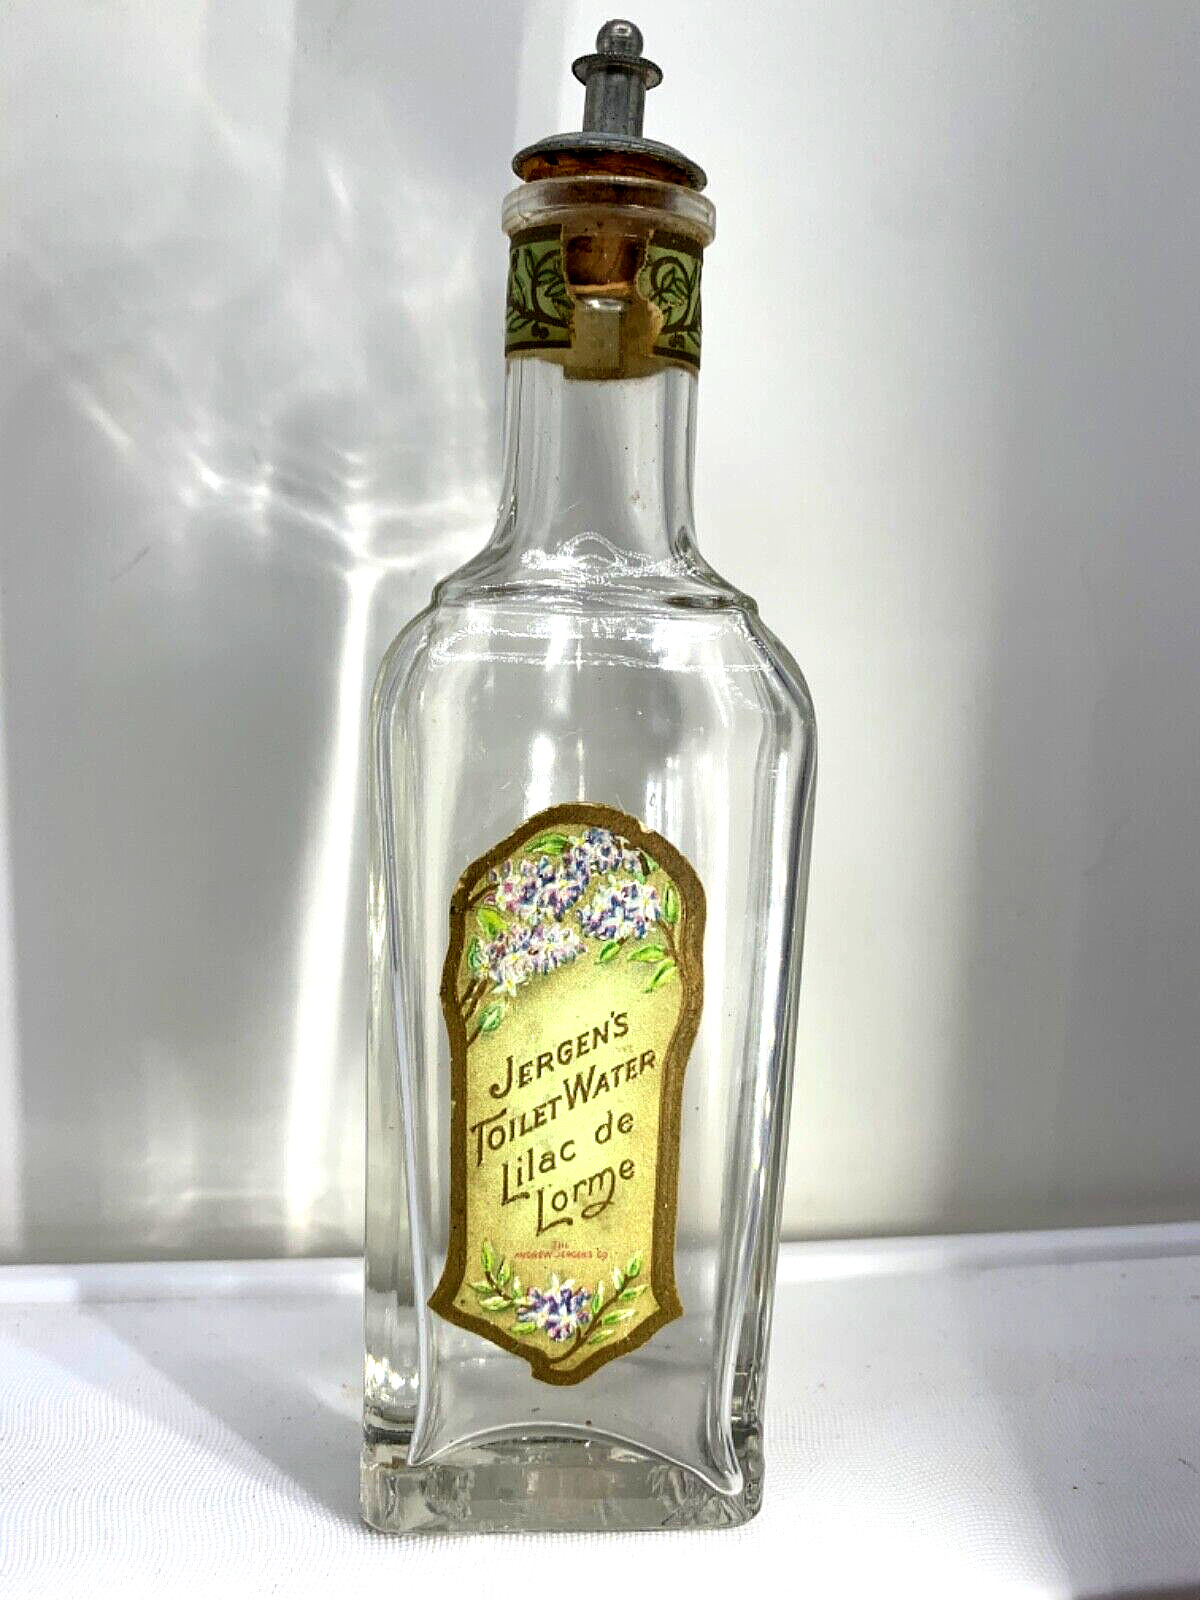 A rare find  Antique perfume bottle.  Lilac de Lorme by Jergen’s.  Est. 1903.